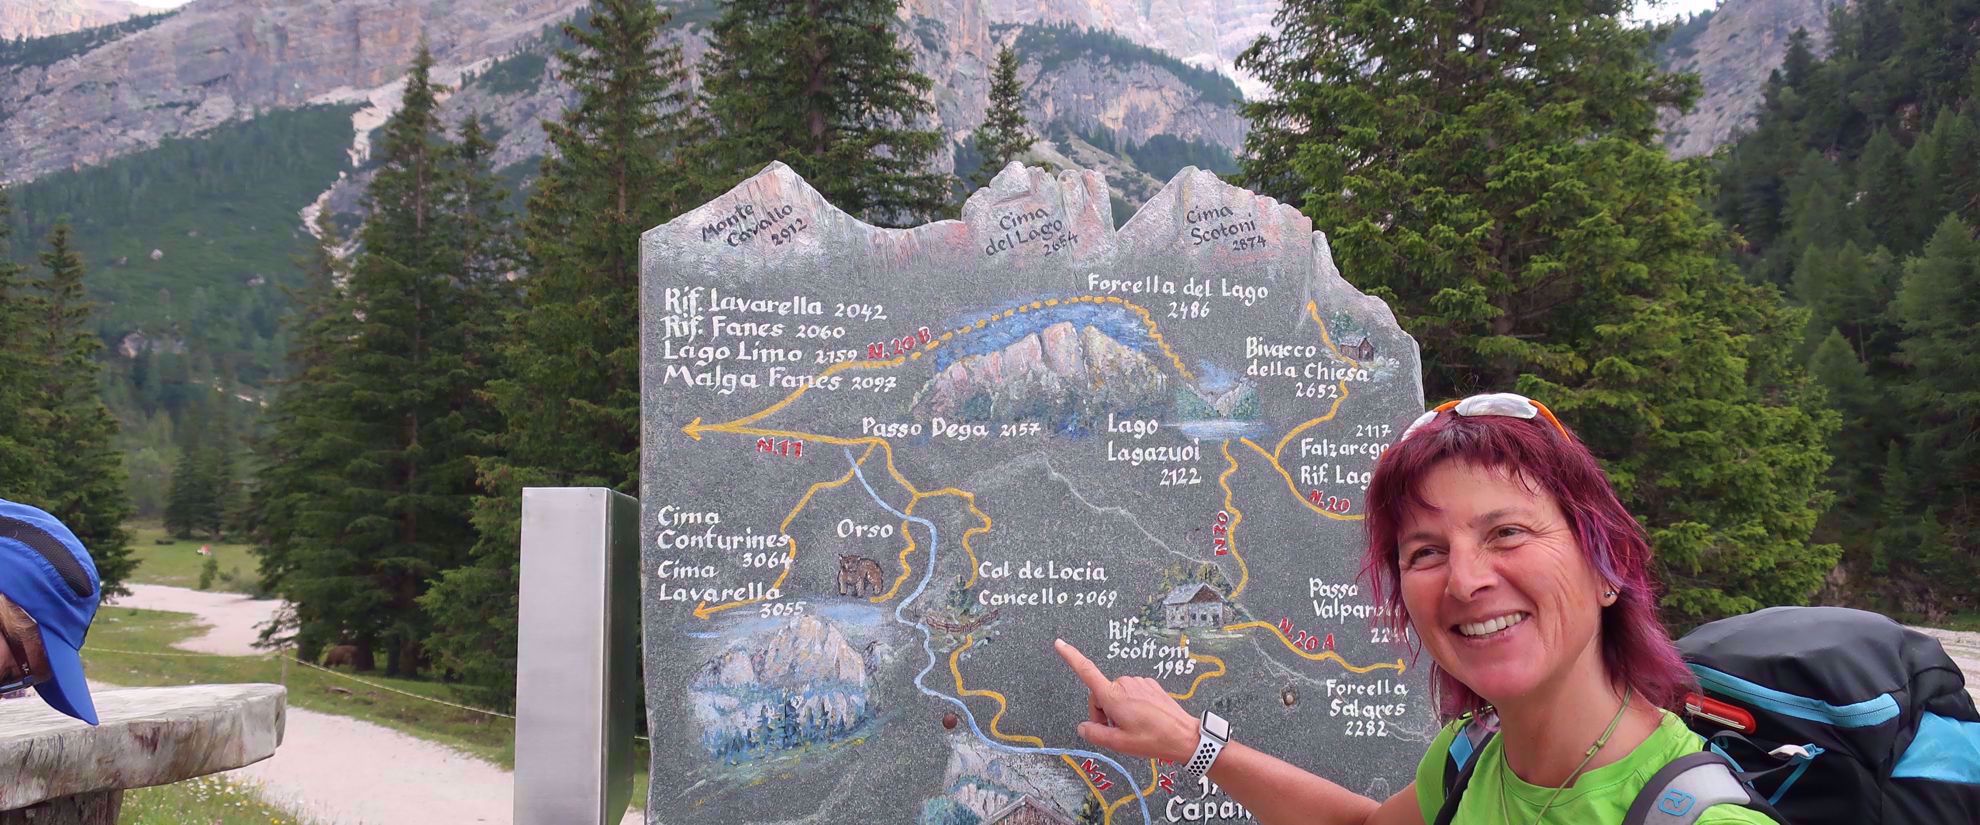 woman points to cal de locia cancello sign northern italian alps